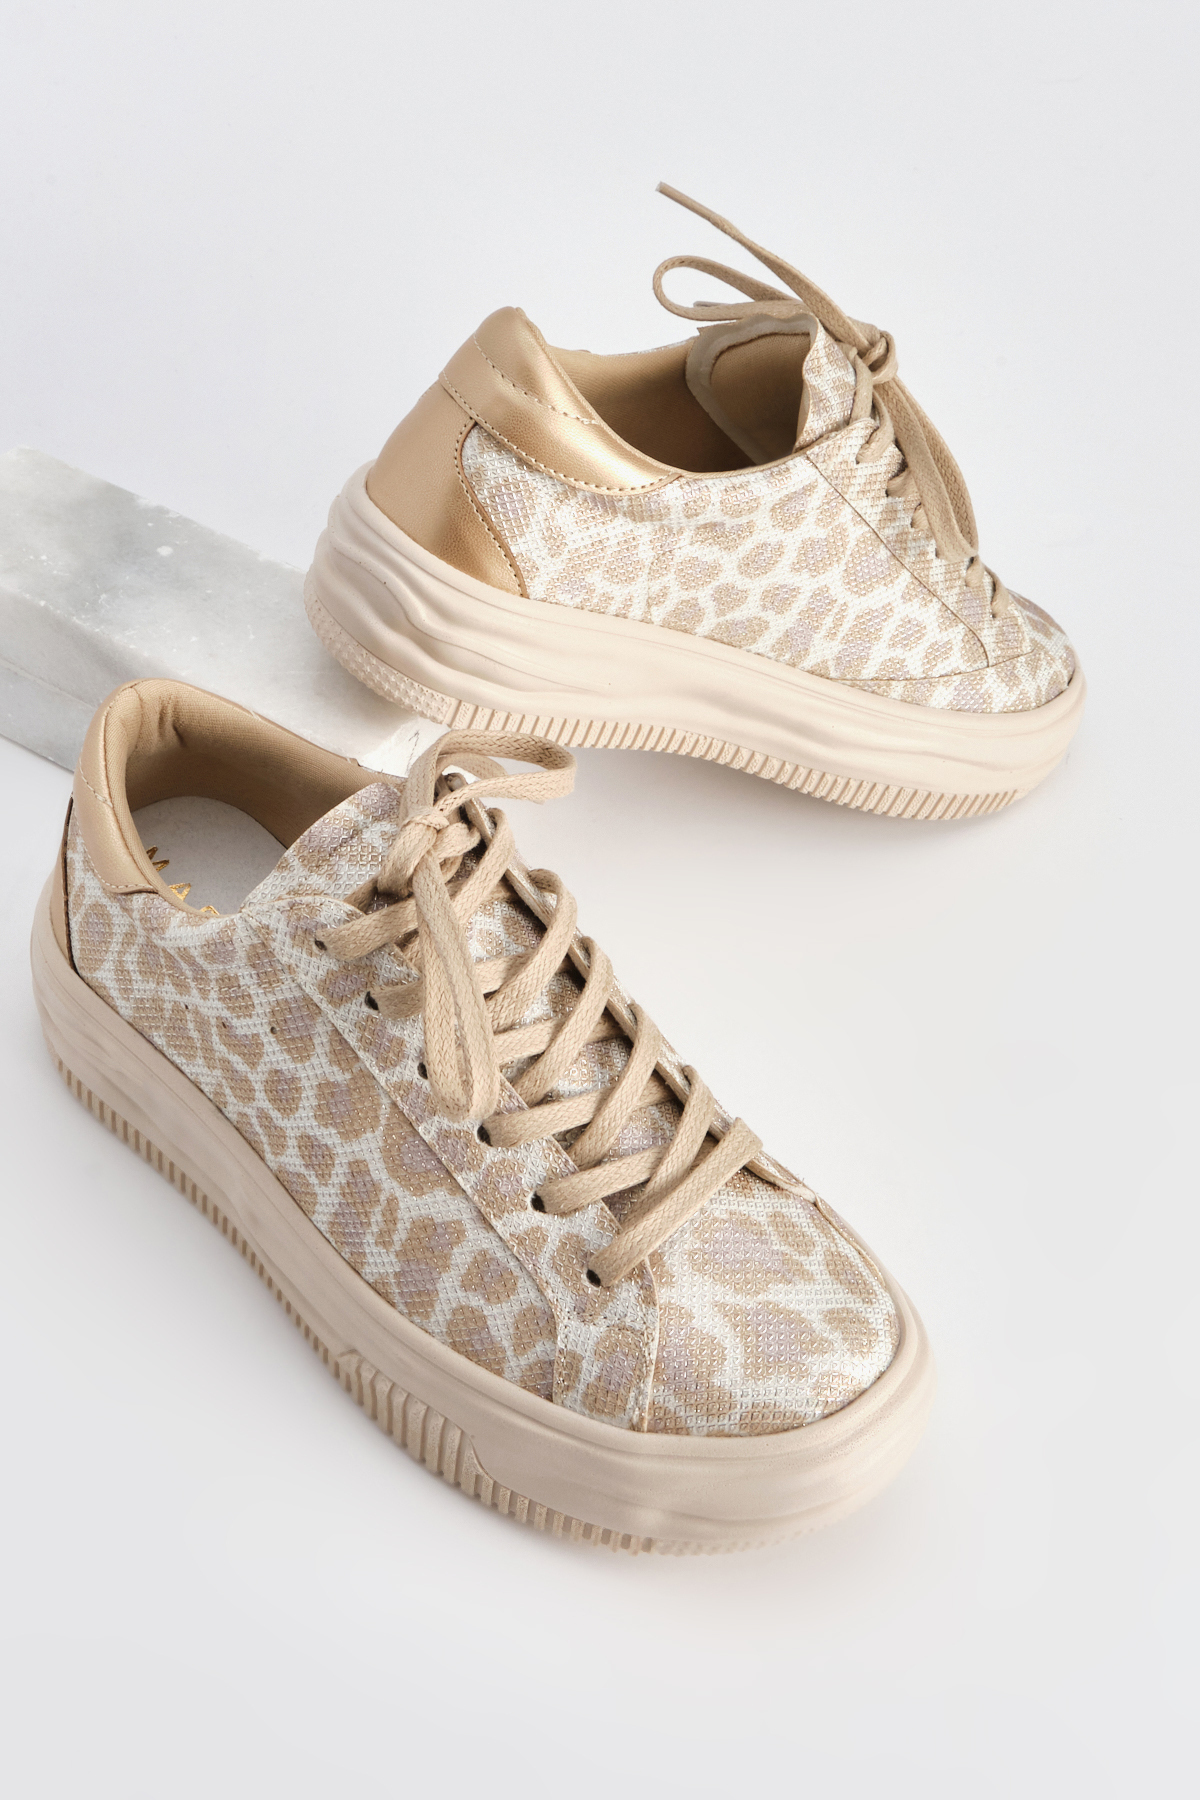 Marjin Women's Sneaker Thick Sole Lace-Up Sneakers Tales Beige Leopard.